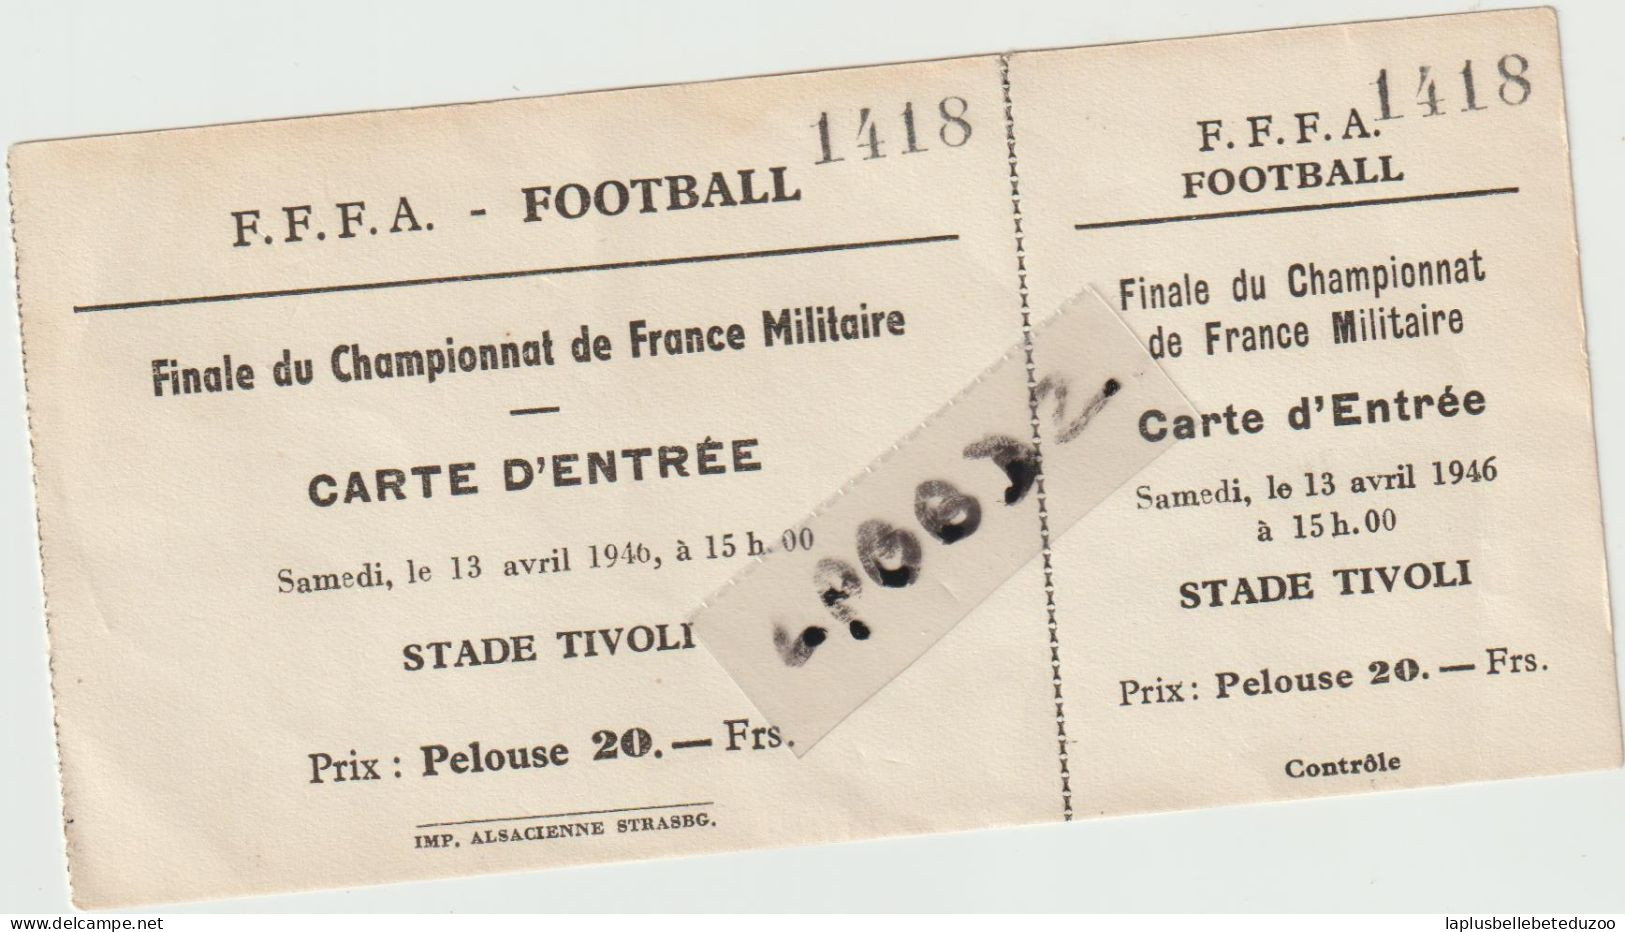 TICKET D'ENTREE - FOOTBALL - FINALE CHAMPIONNAT DE FRANCE MILITAIRE 1946 - Tickets D'entrée